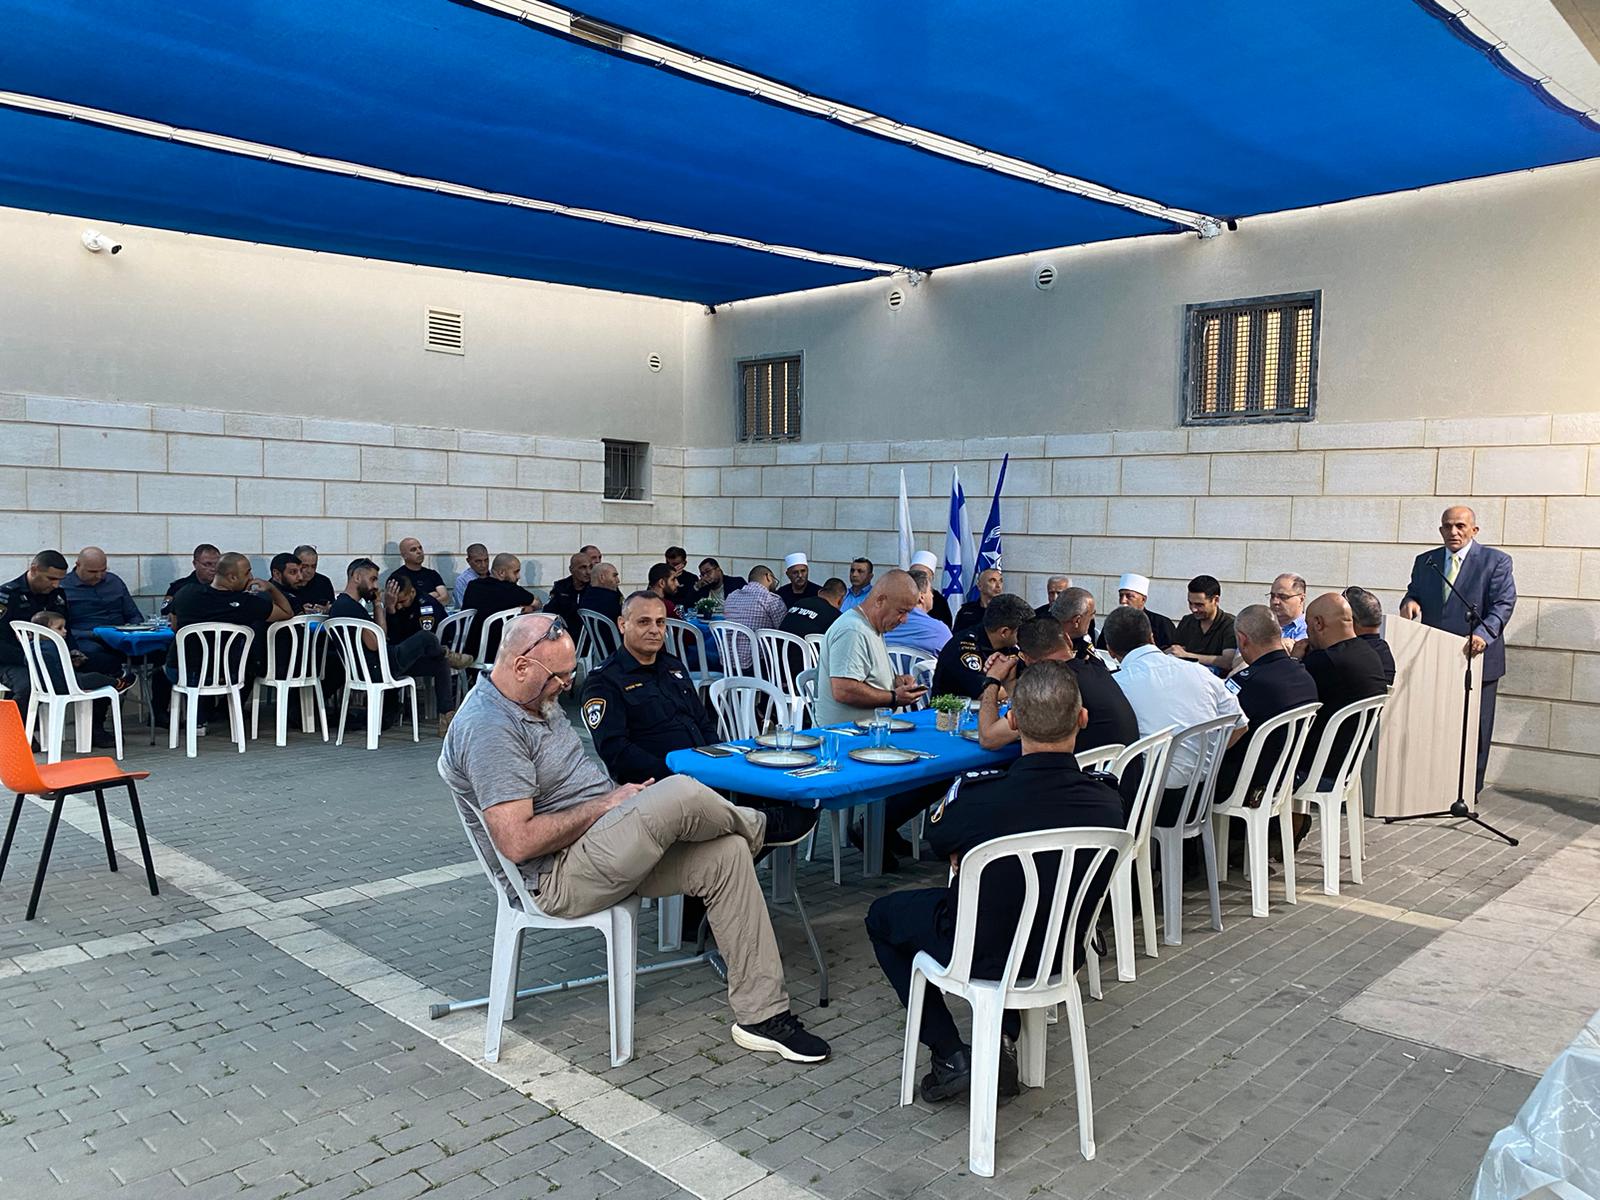 شخصيات اجتماعية من مختلف الاديان في افطار جماعي في مركز شرطة الجليل الغربي